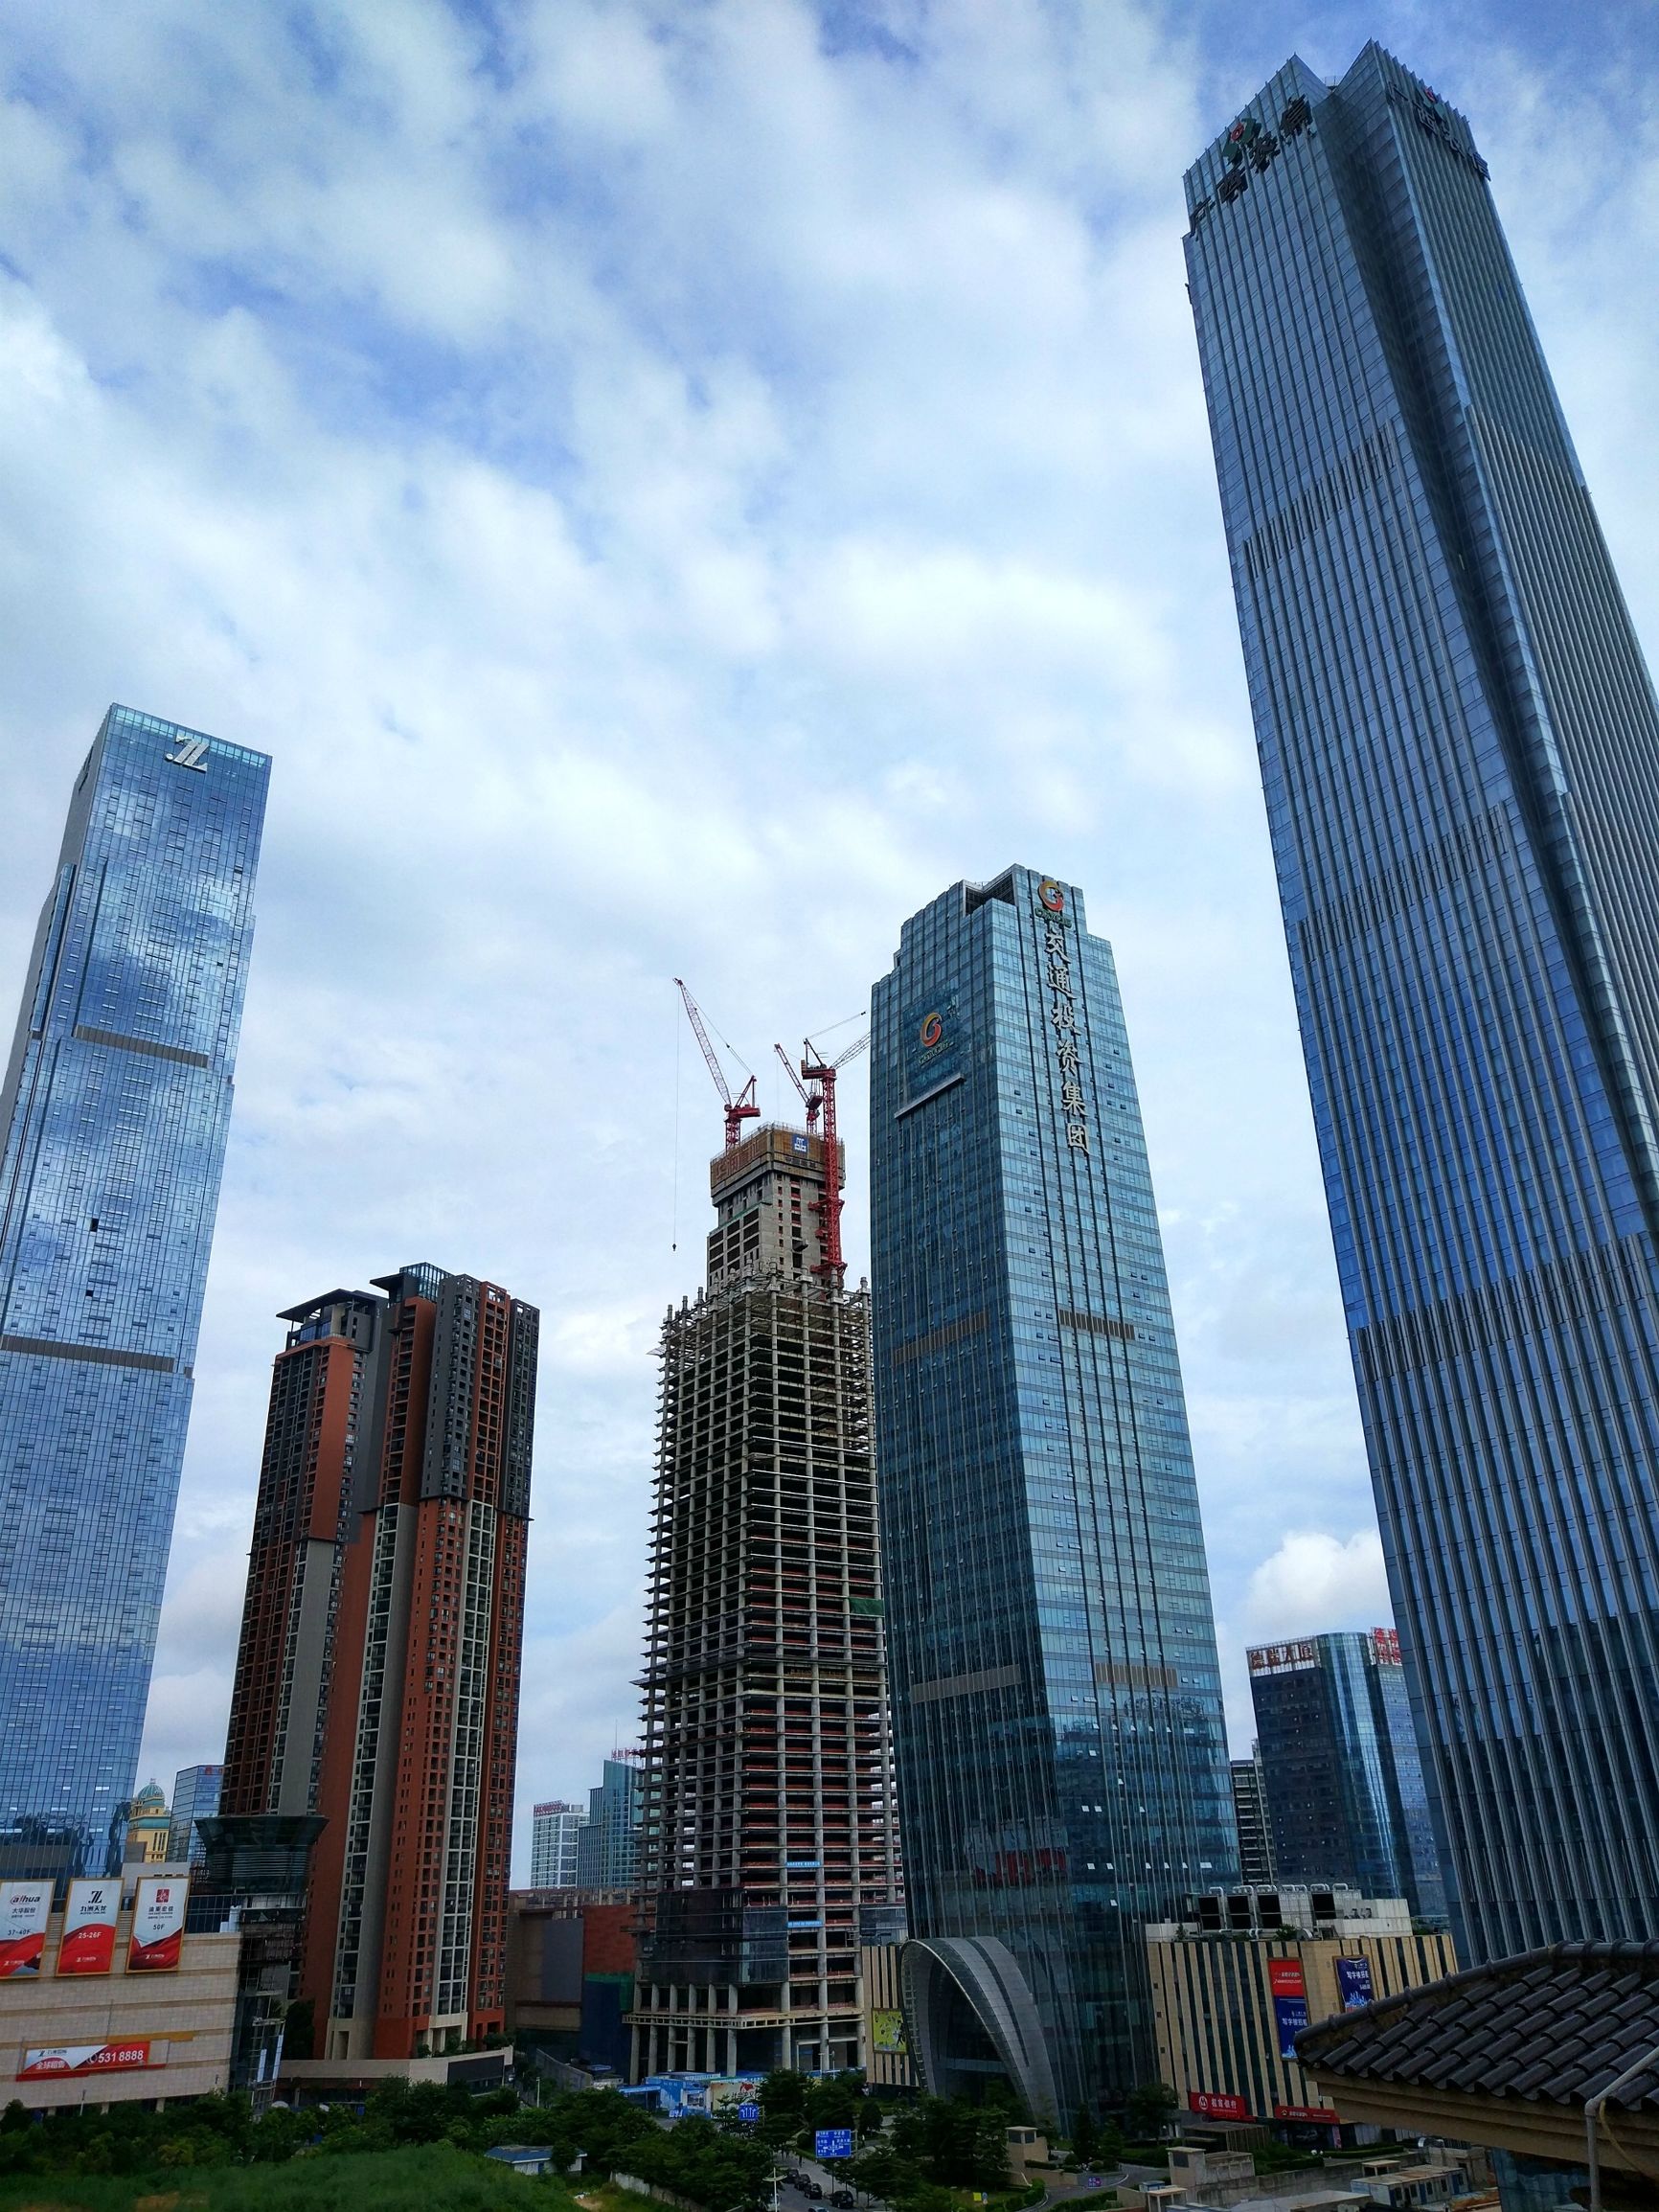 南宁华润中心高445米,90层,是在建的广西第一高楼